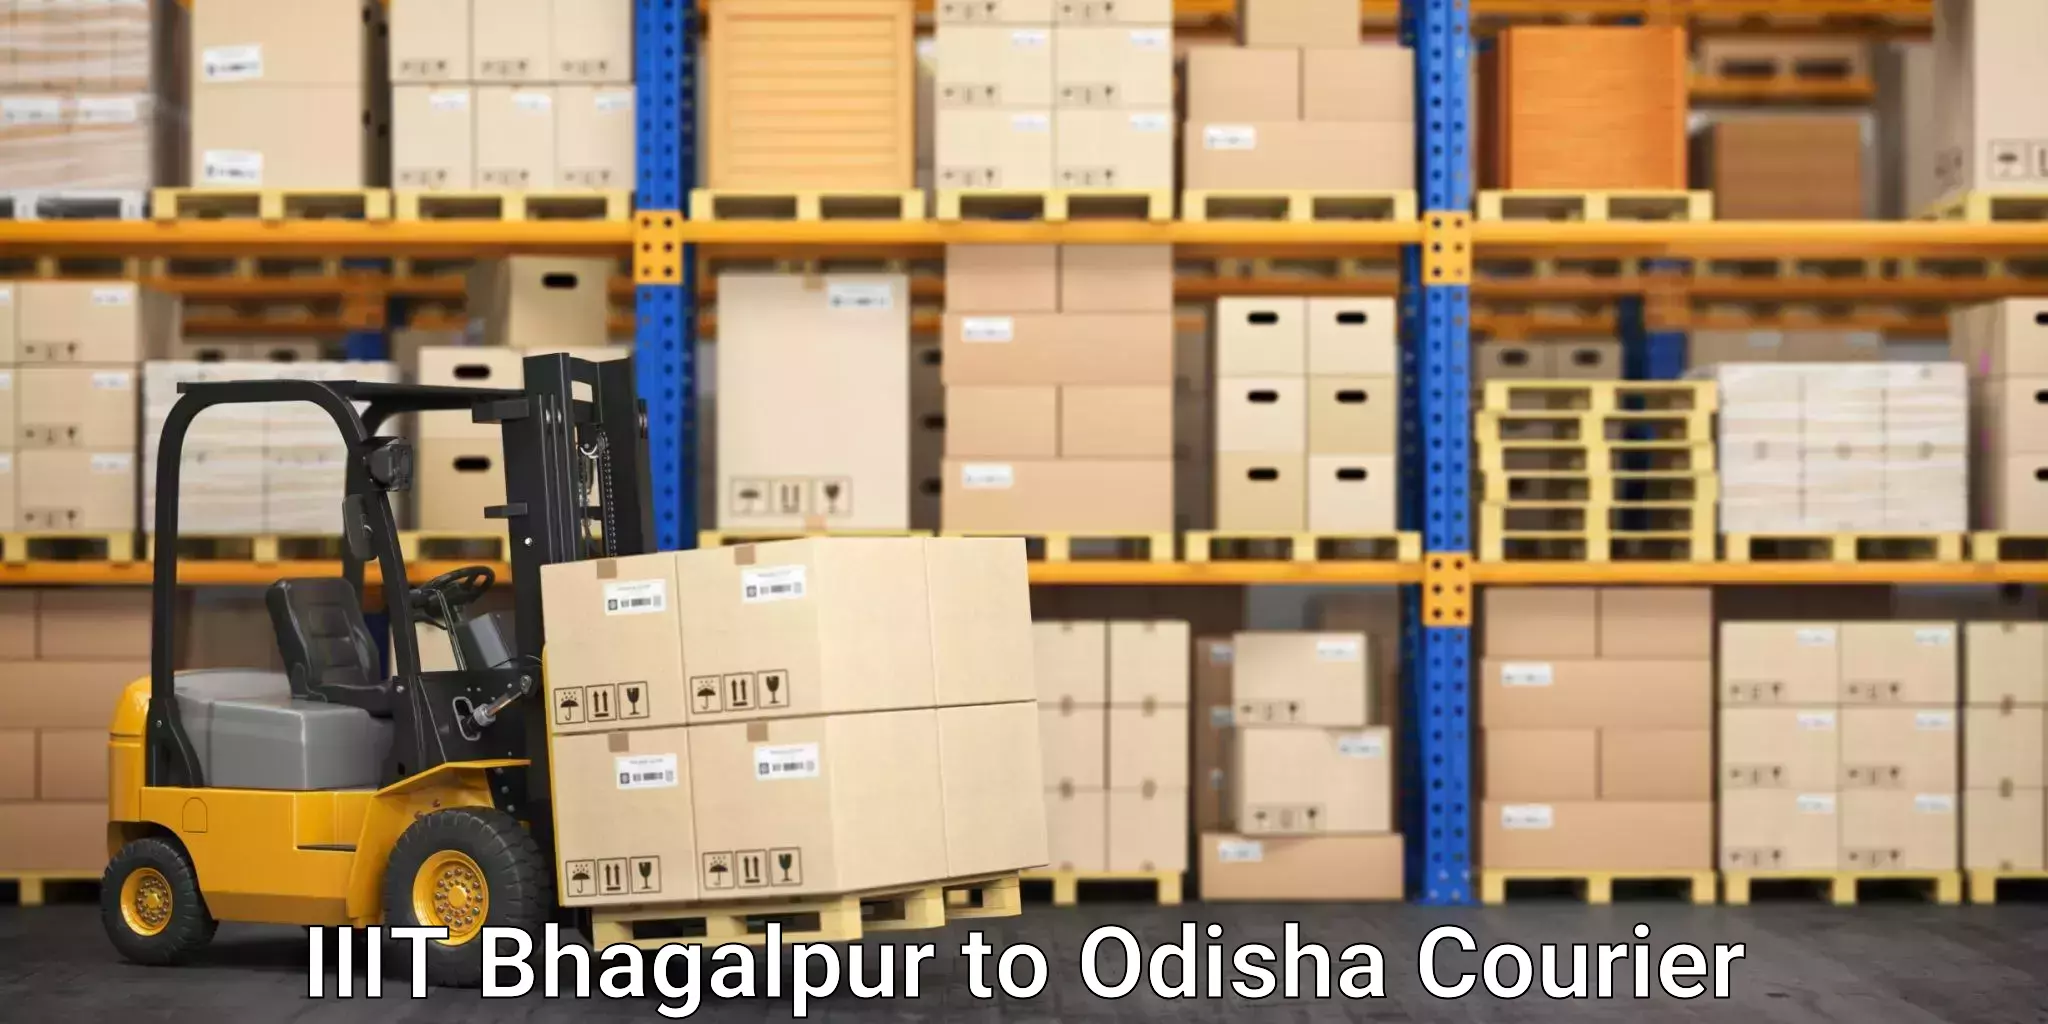 Skilled furniture movers IIIT Bhagalpur to Parlakhemundi